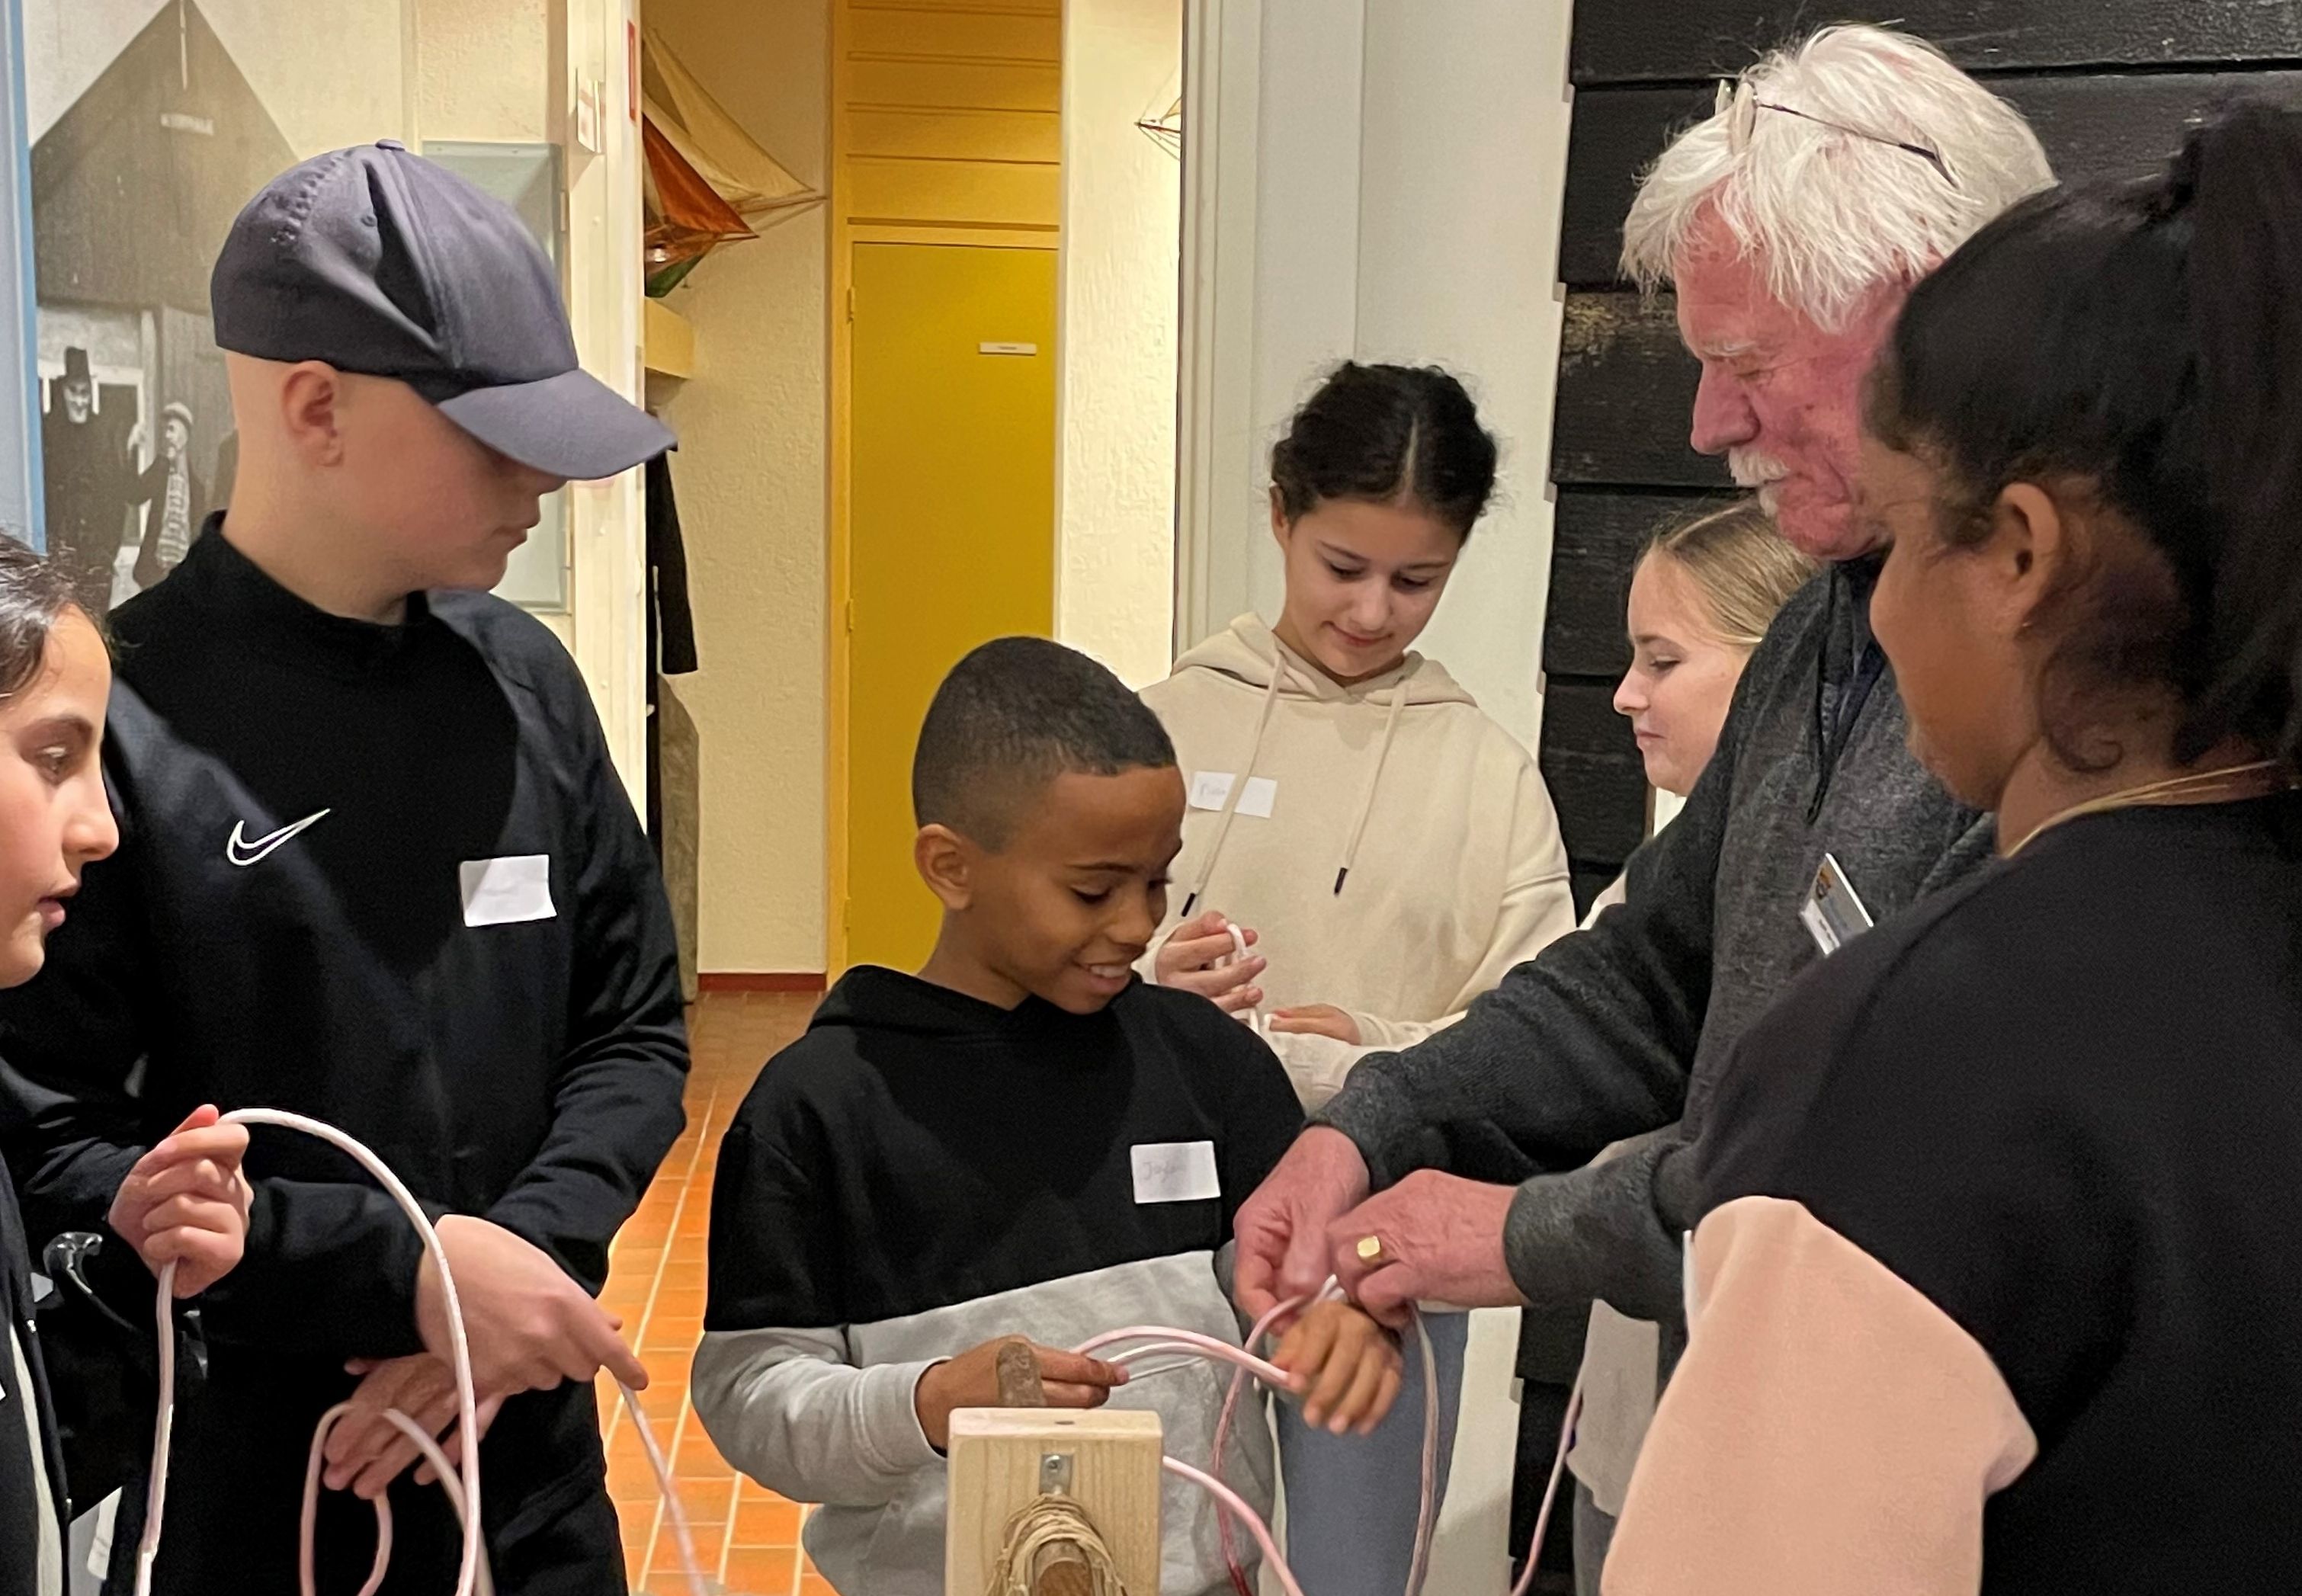 De rondleider van Museum Arnemuiden laat een groep kinderen zien hoe ze visnetten moeten knopen.